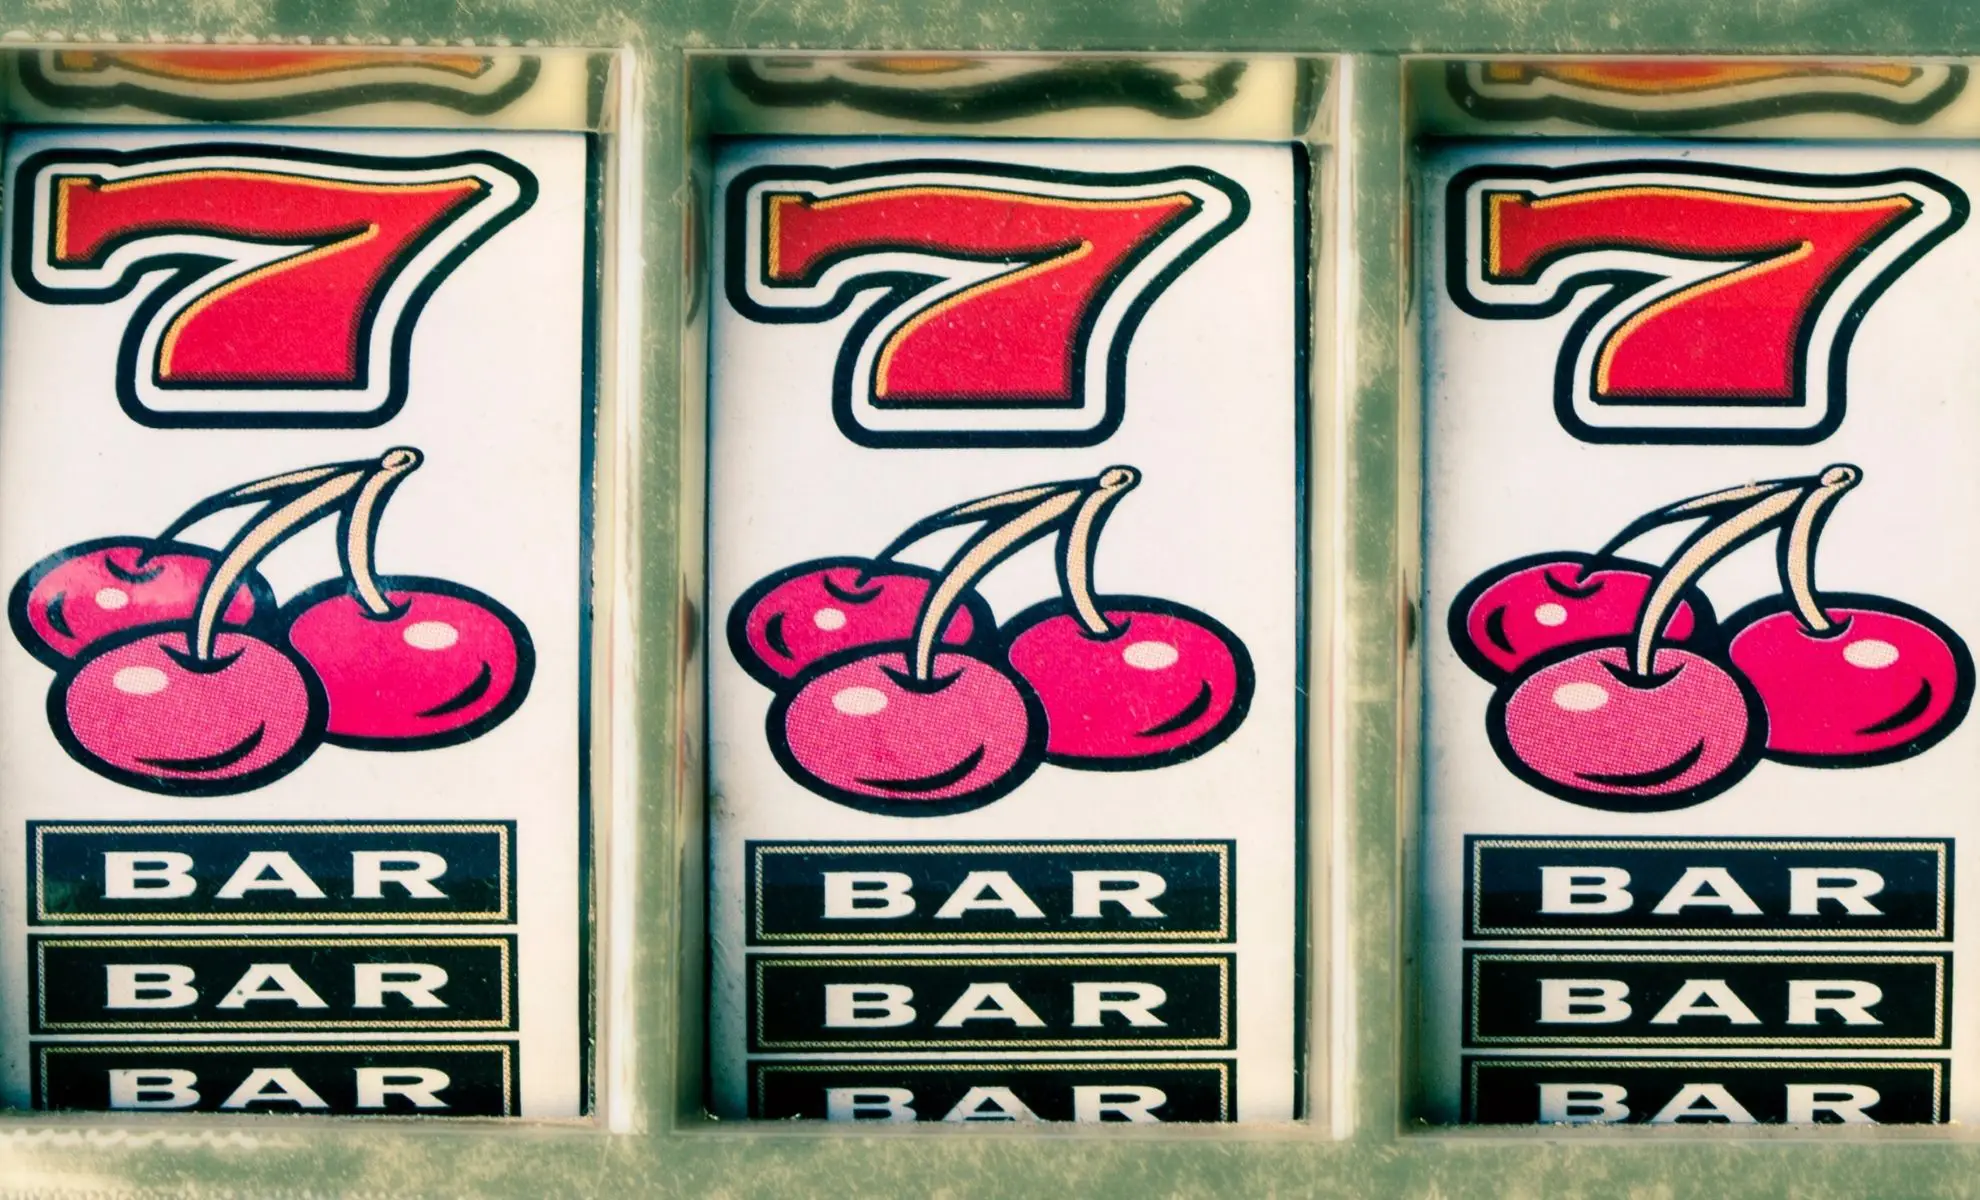 jackpot slot machines